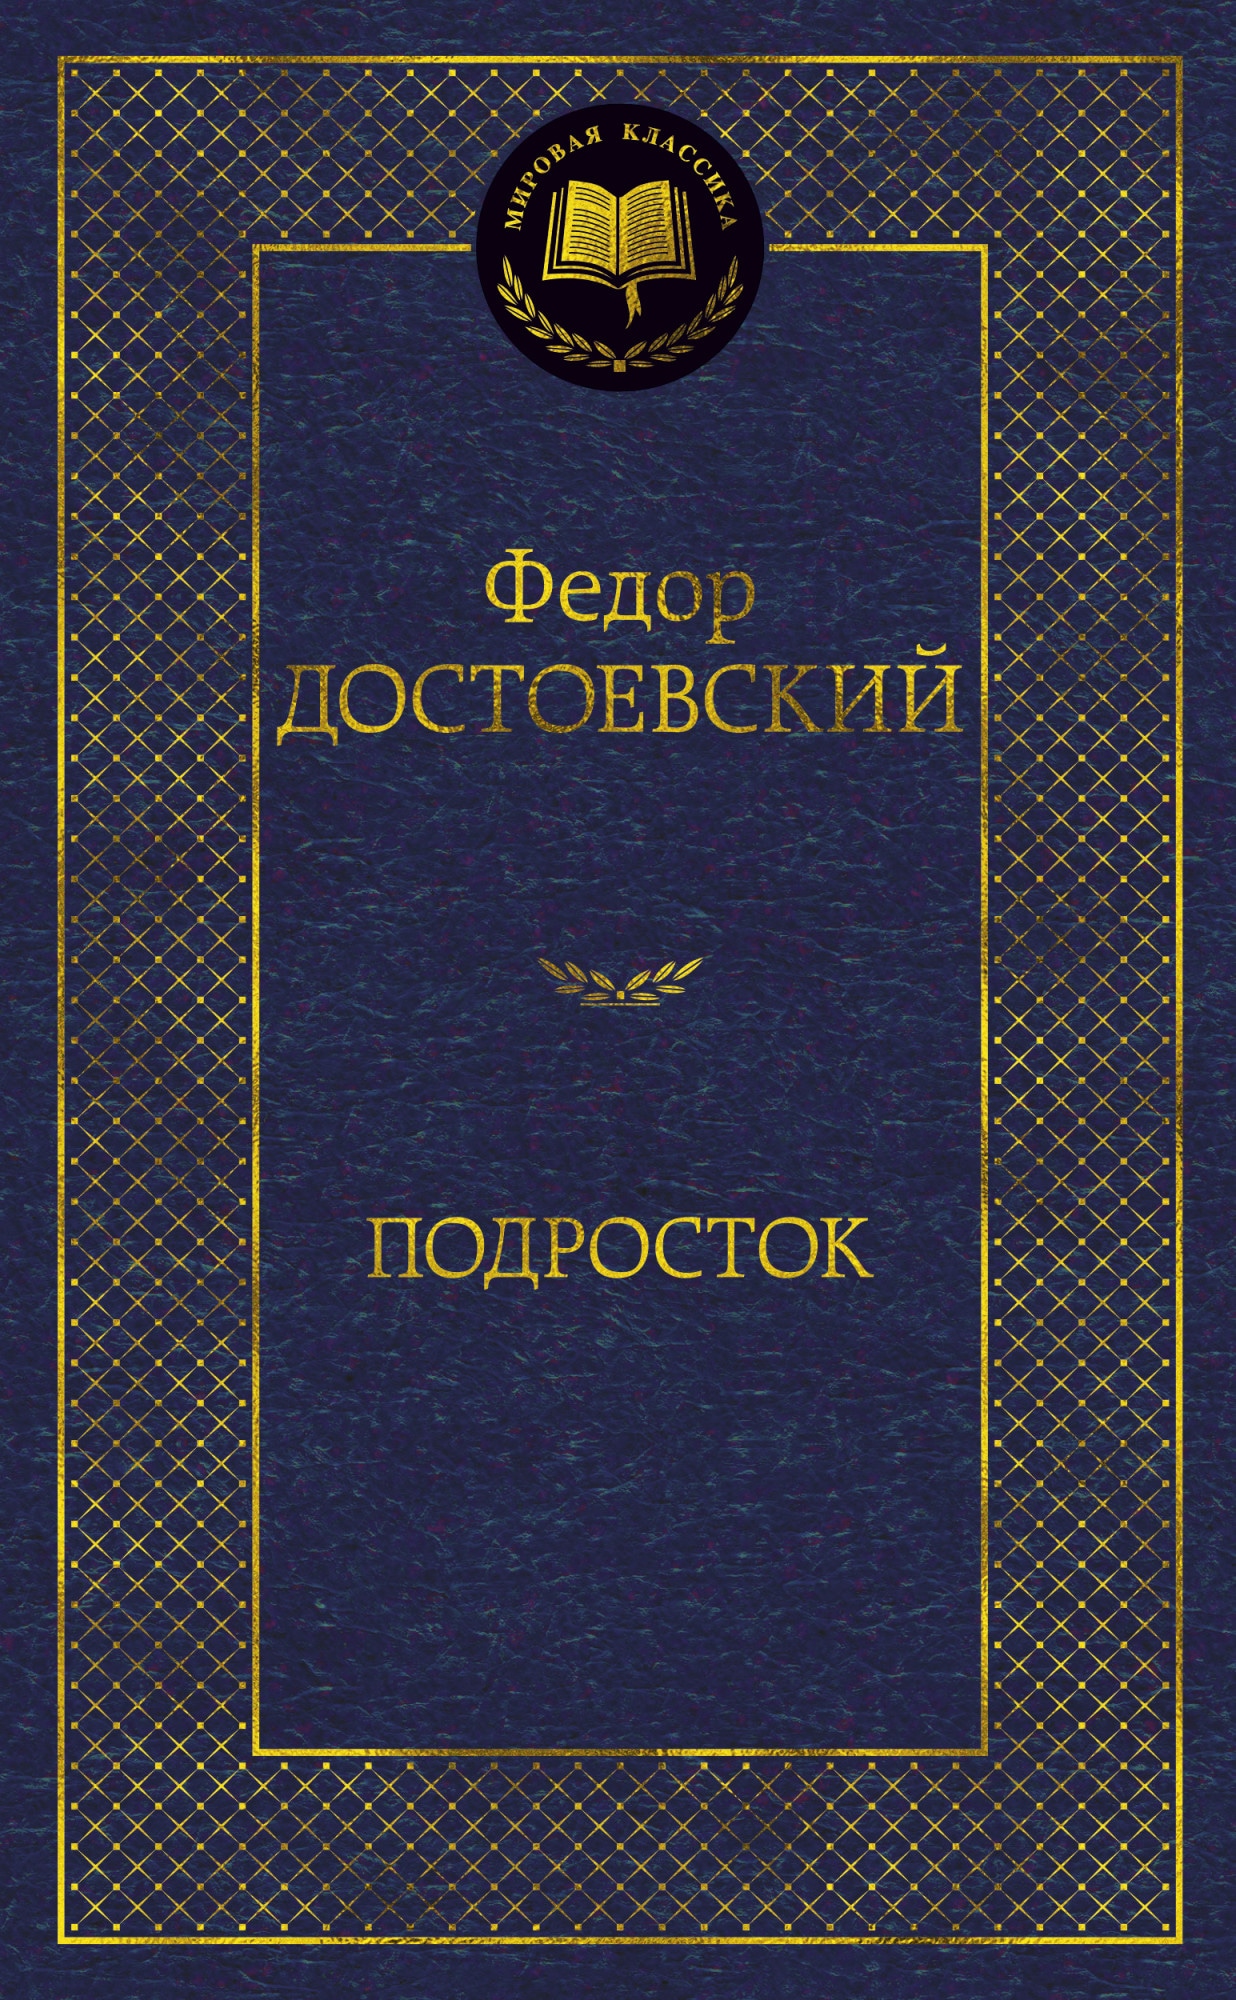 Книга «Подросток» Федор Достоевский — 2021 г.